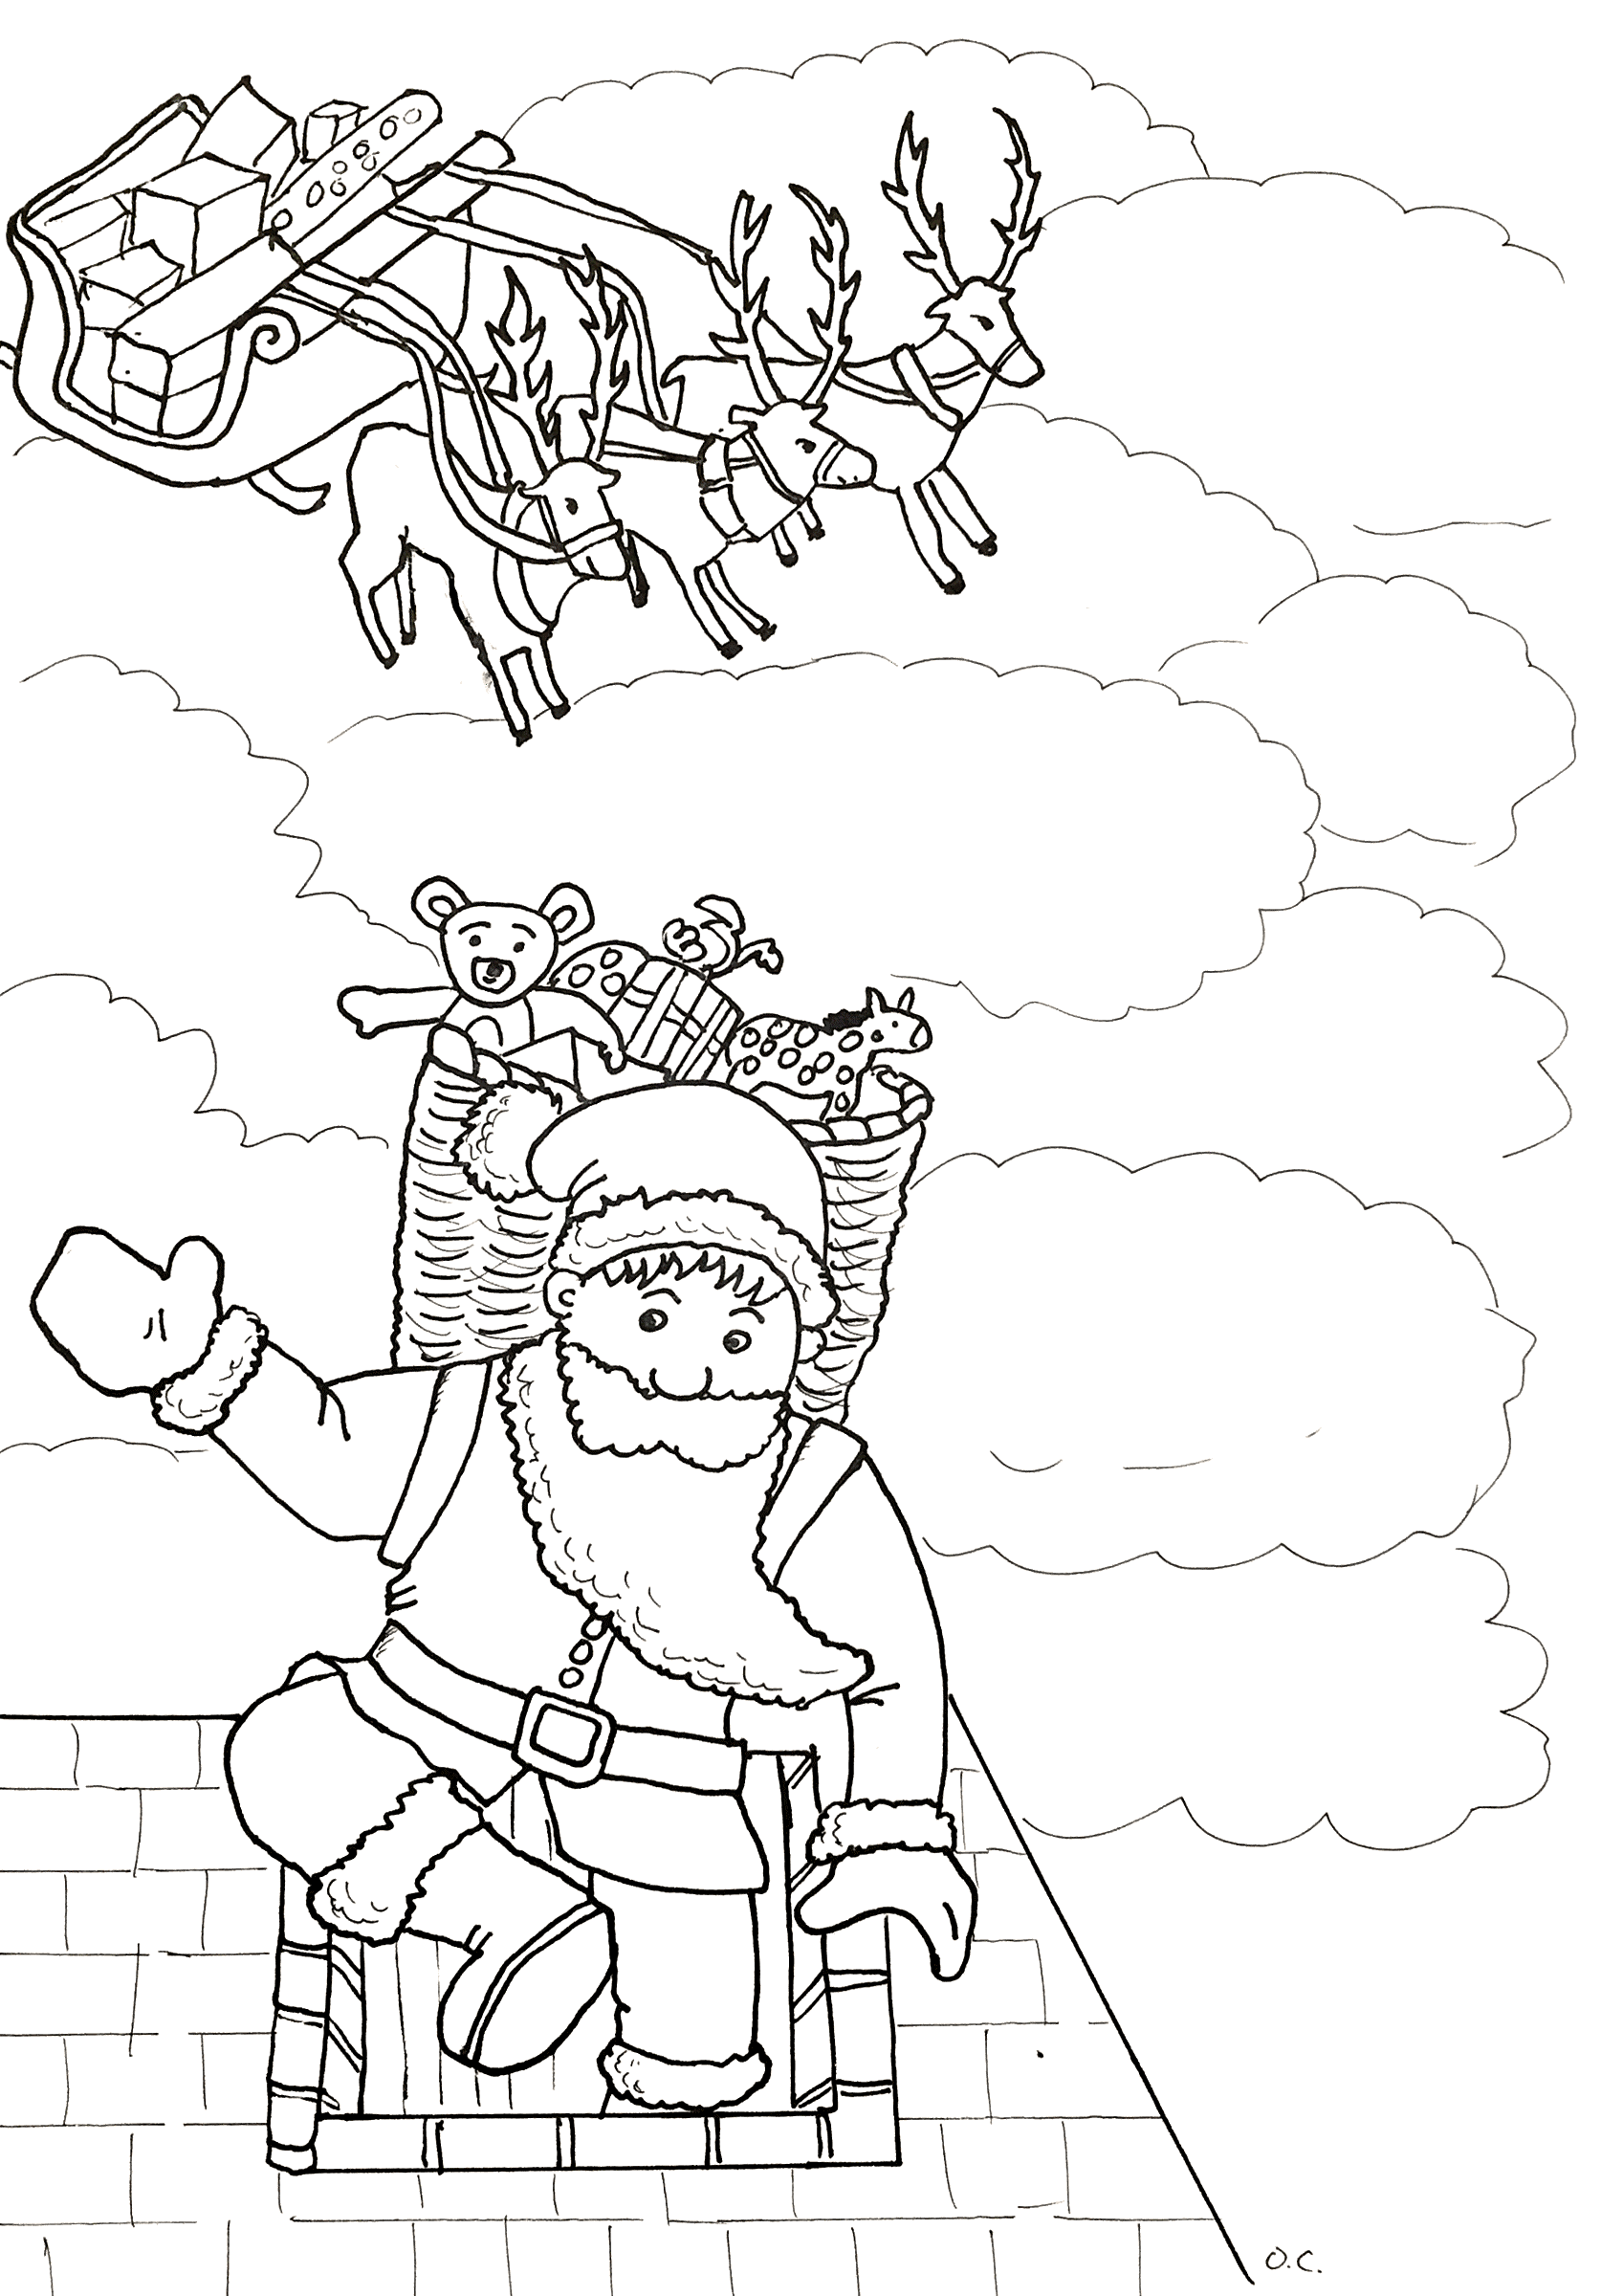 Le Père Noël entrant dans une cheminée, par Olivier